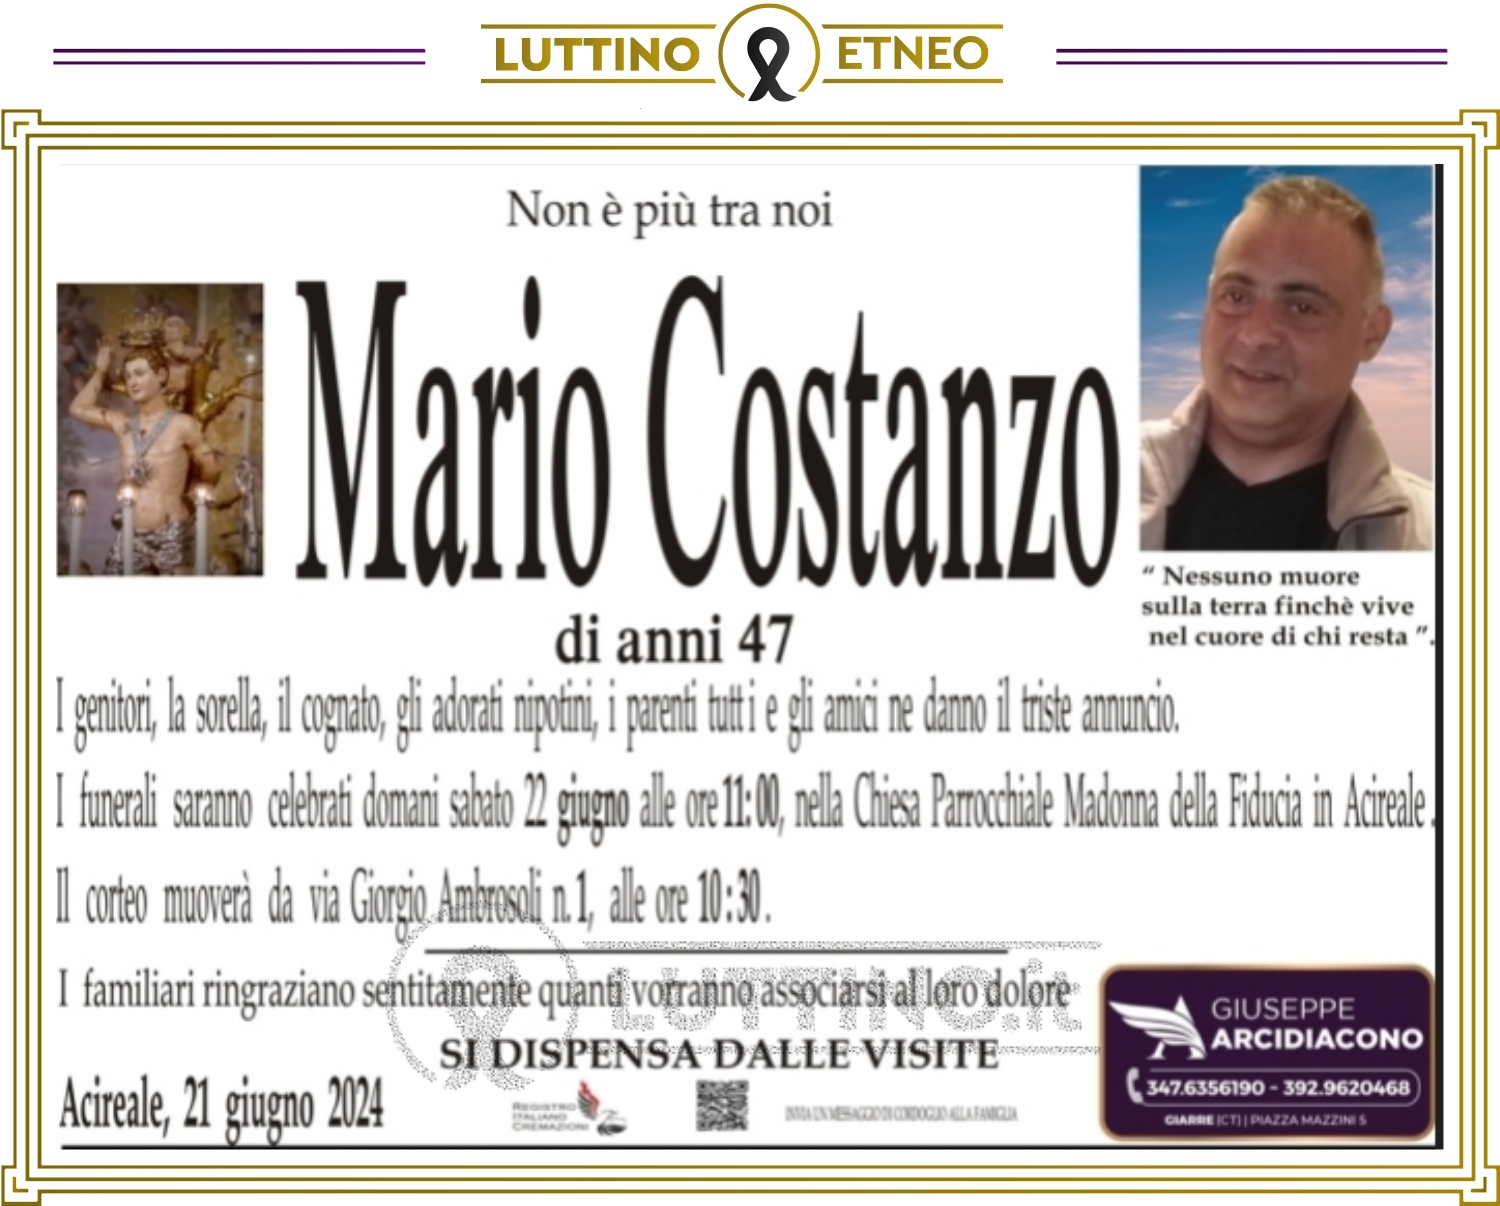 Mario Costanzo